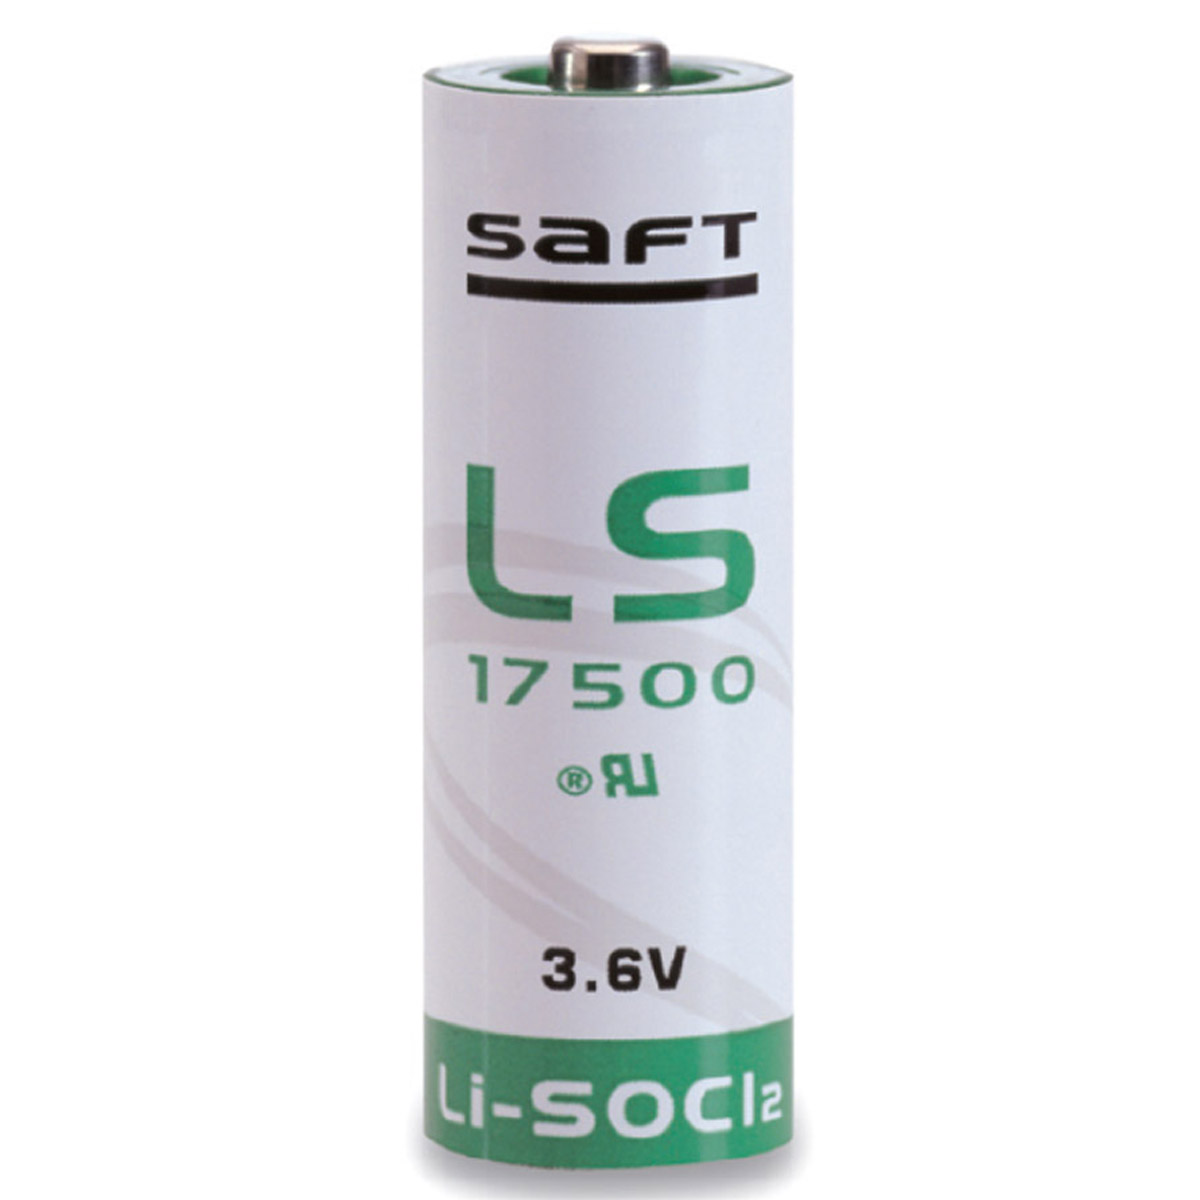 باتری لیتیوم-یون سافت کد 17500 ظرفیت 3600 میلی آمپر ساعت 